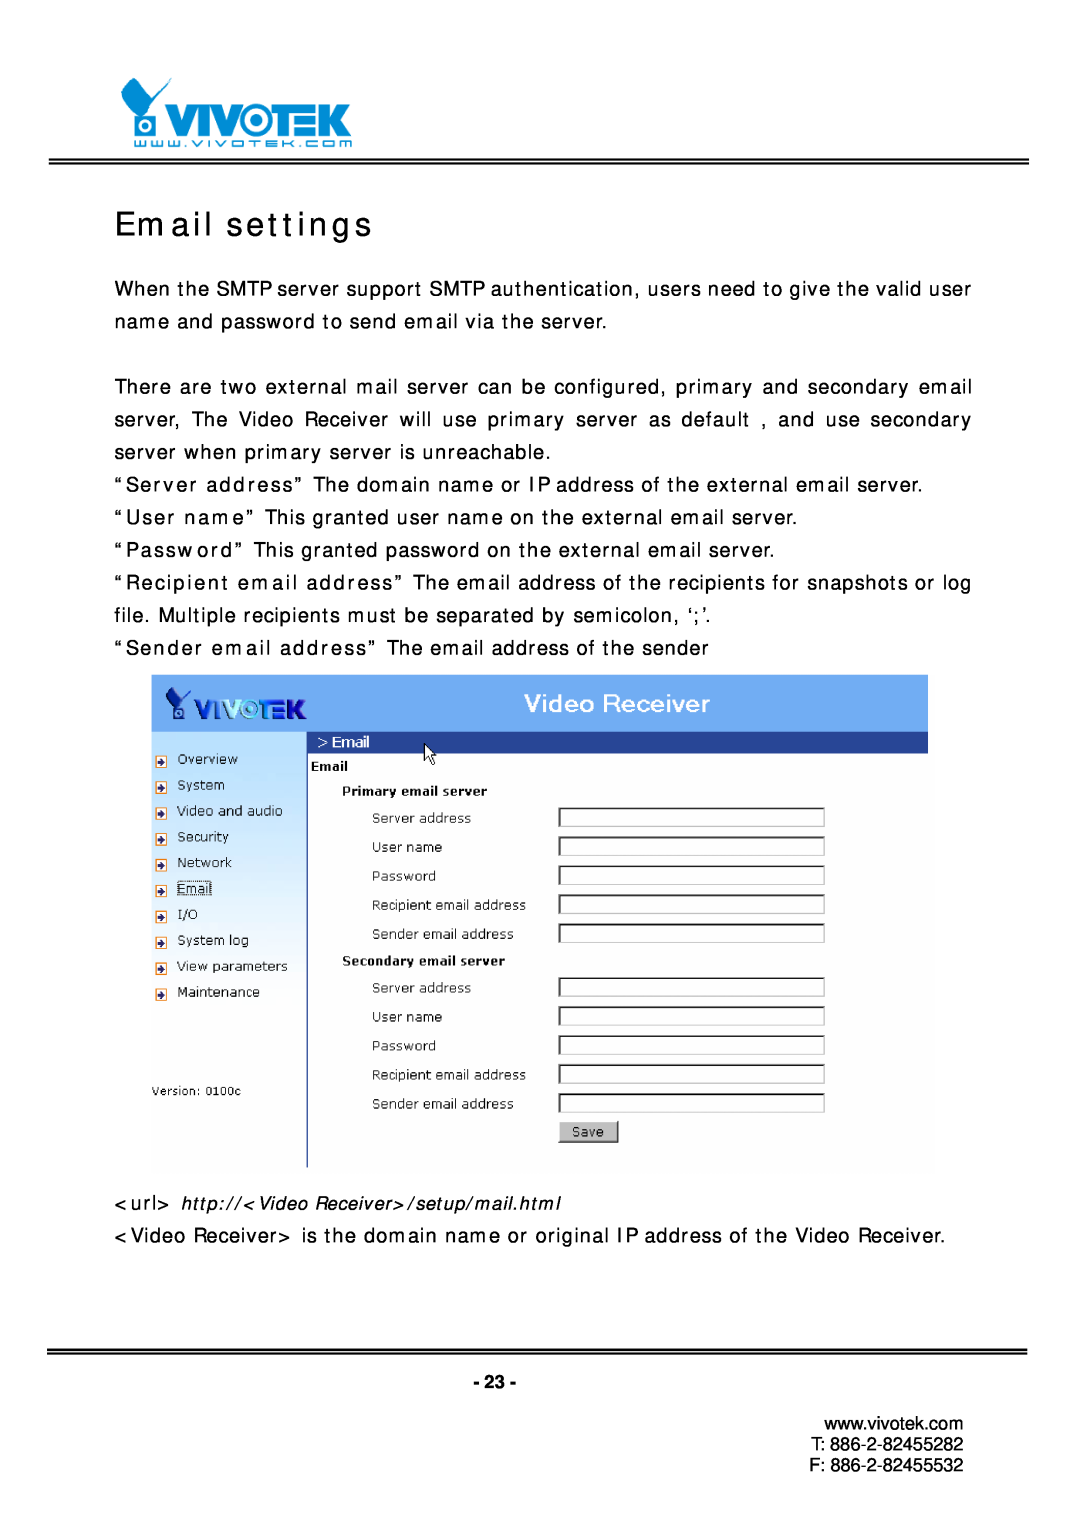 Vivotek RX7101 manual Email settings 